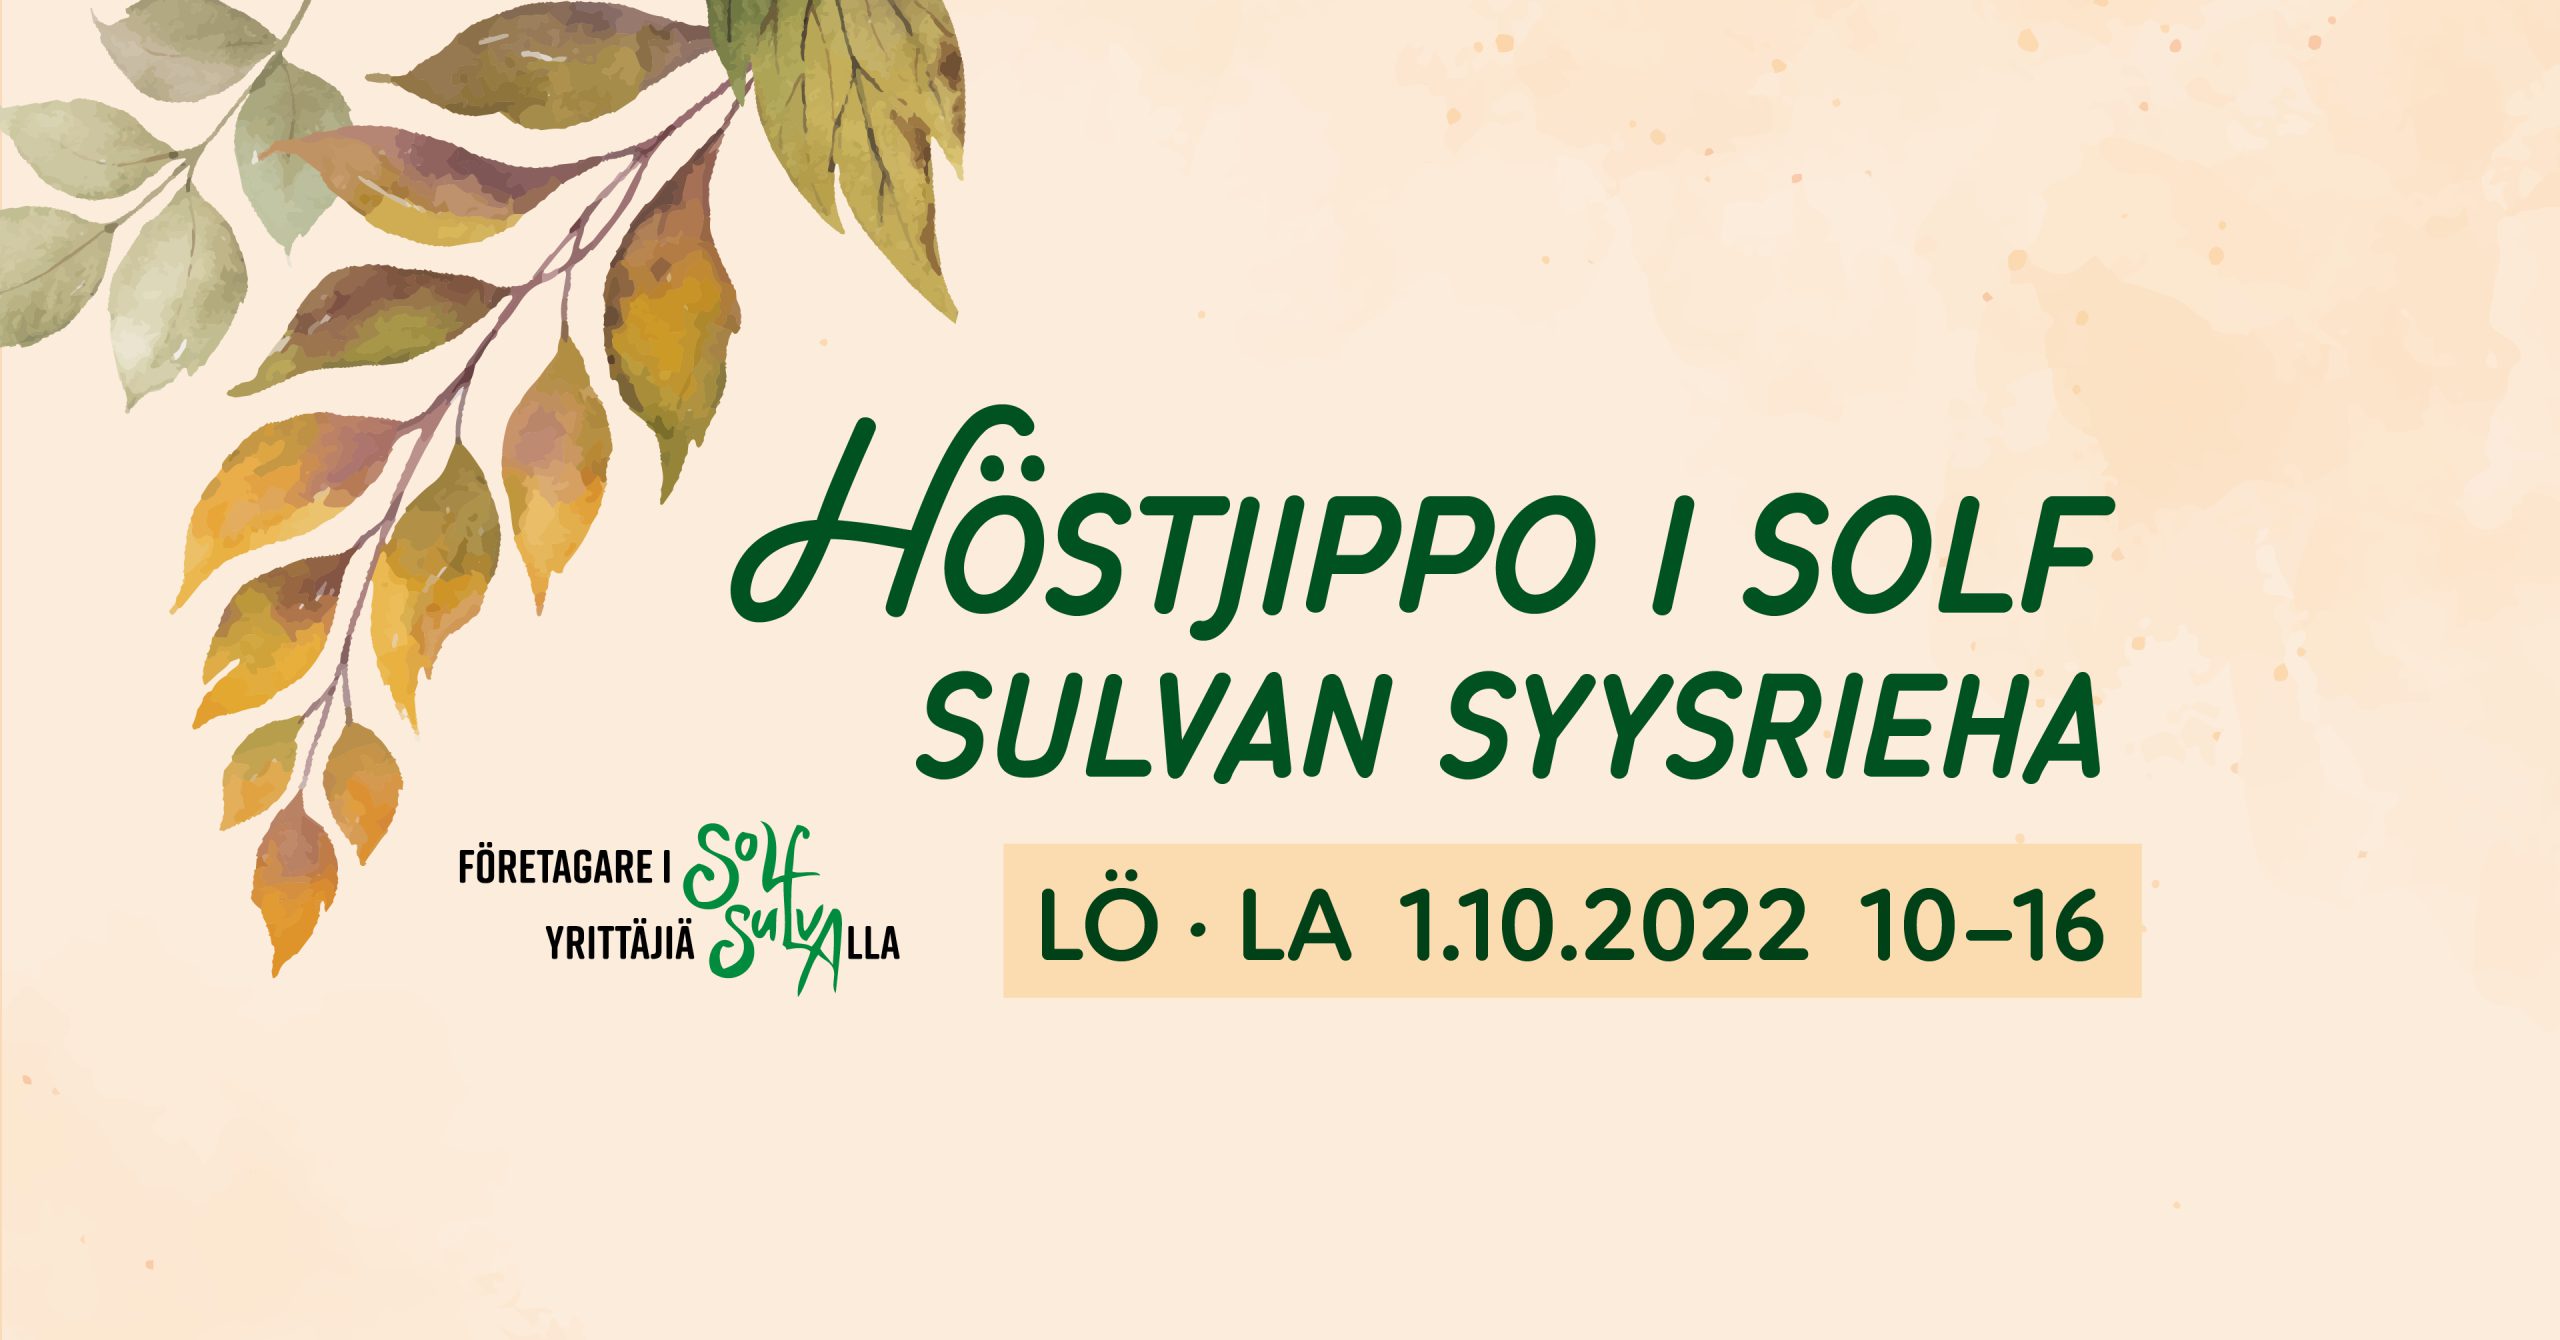 Höstjippo i Solf – Sulvan syysrieha featured image